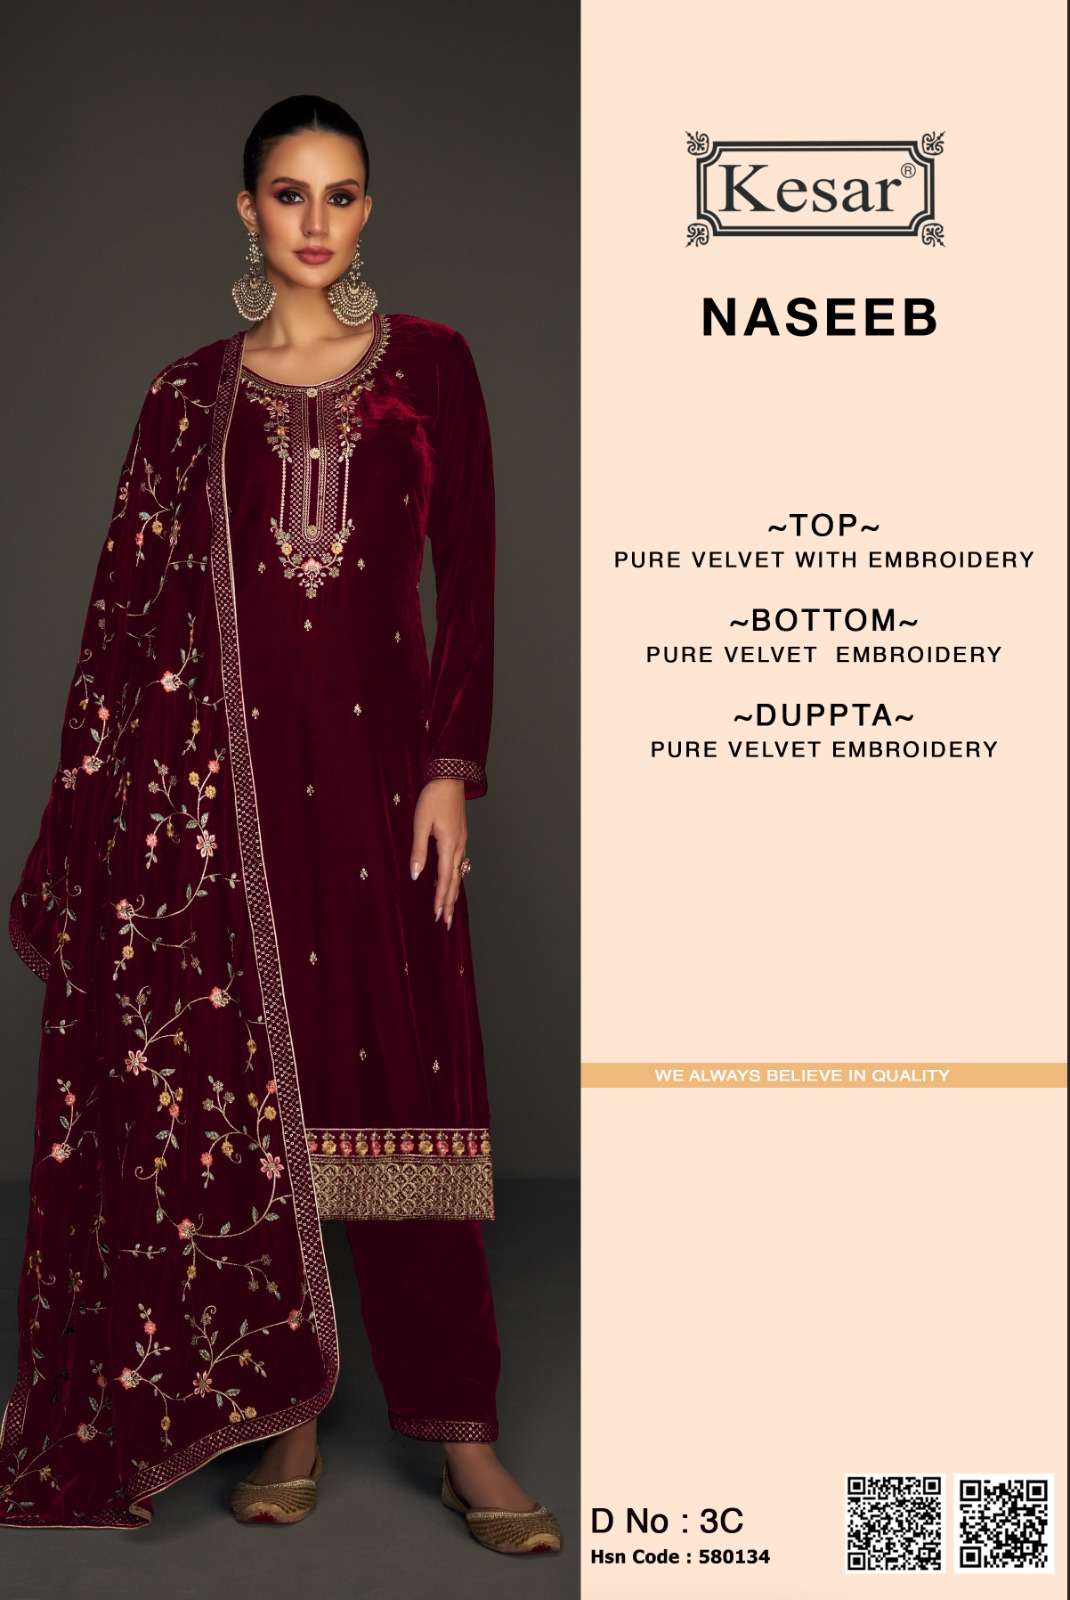 kesar naseeb new latest designer wedding wear salwar kameez wholesaler surat gujarat